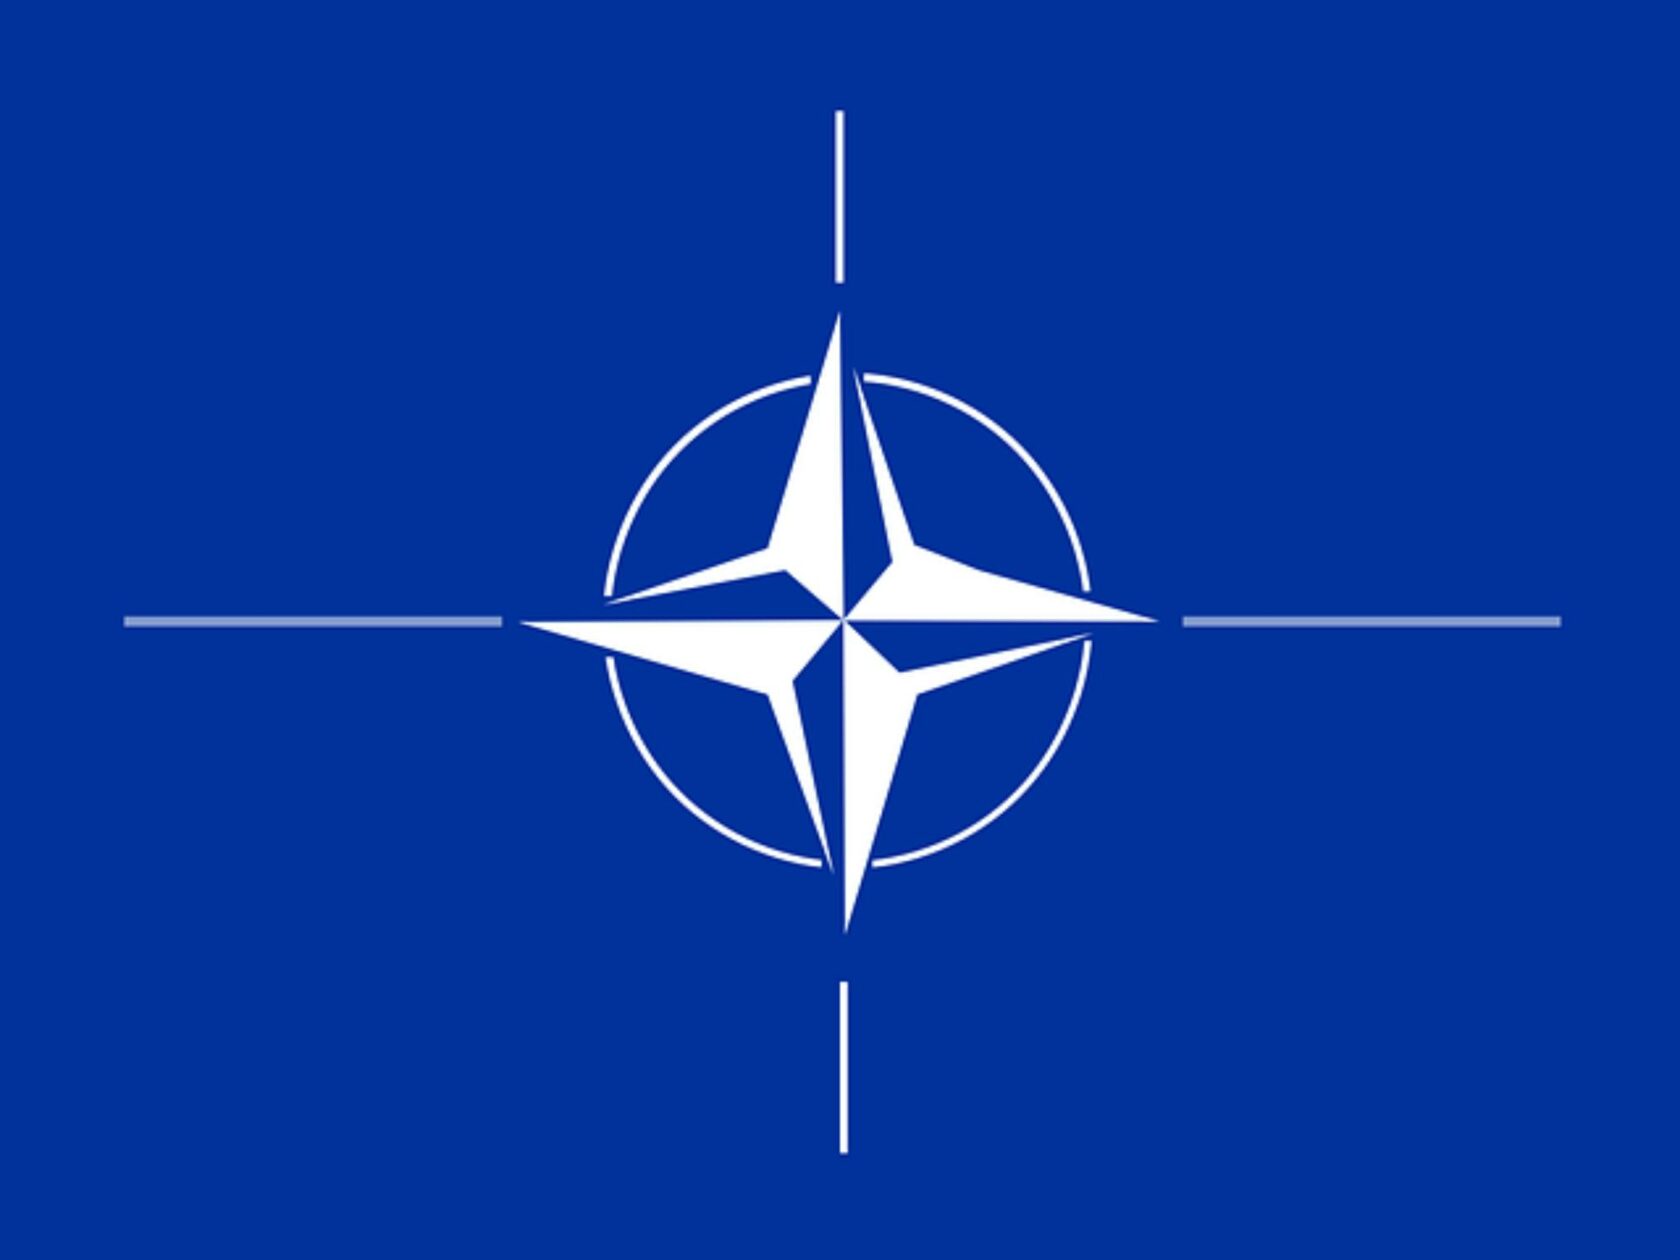 Die NATO ist nicht böse